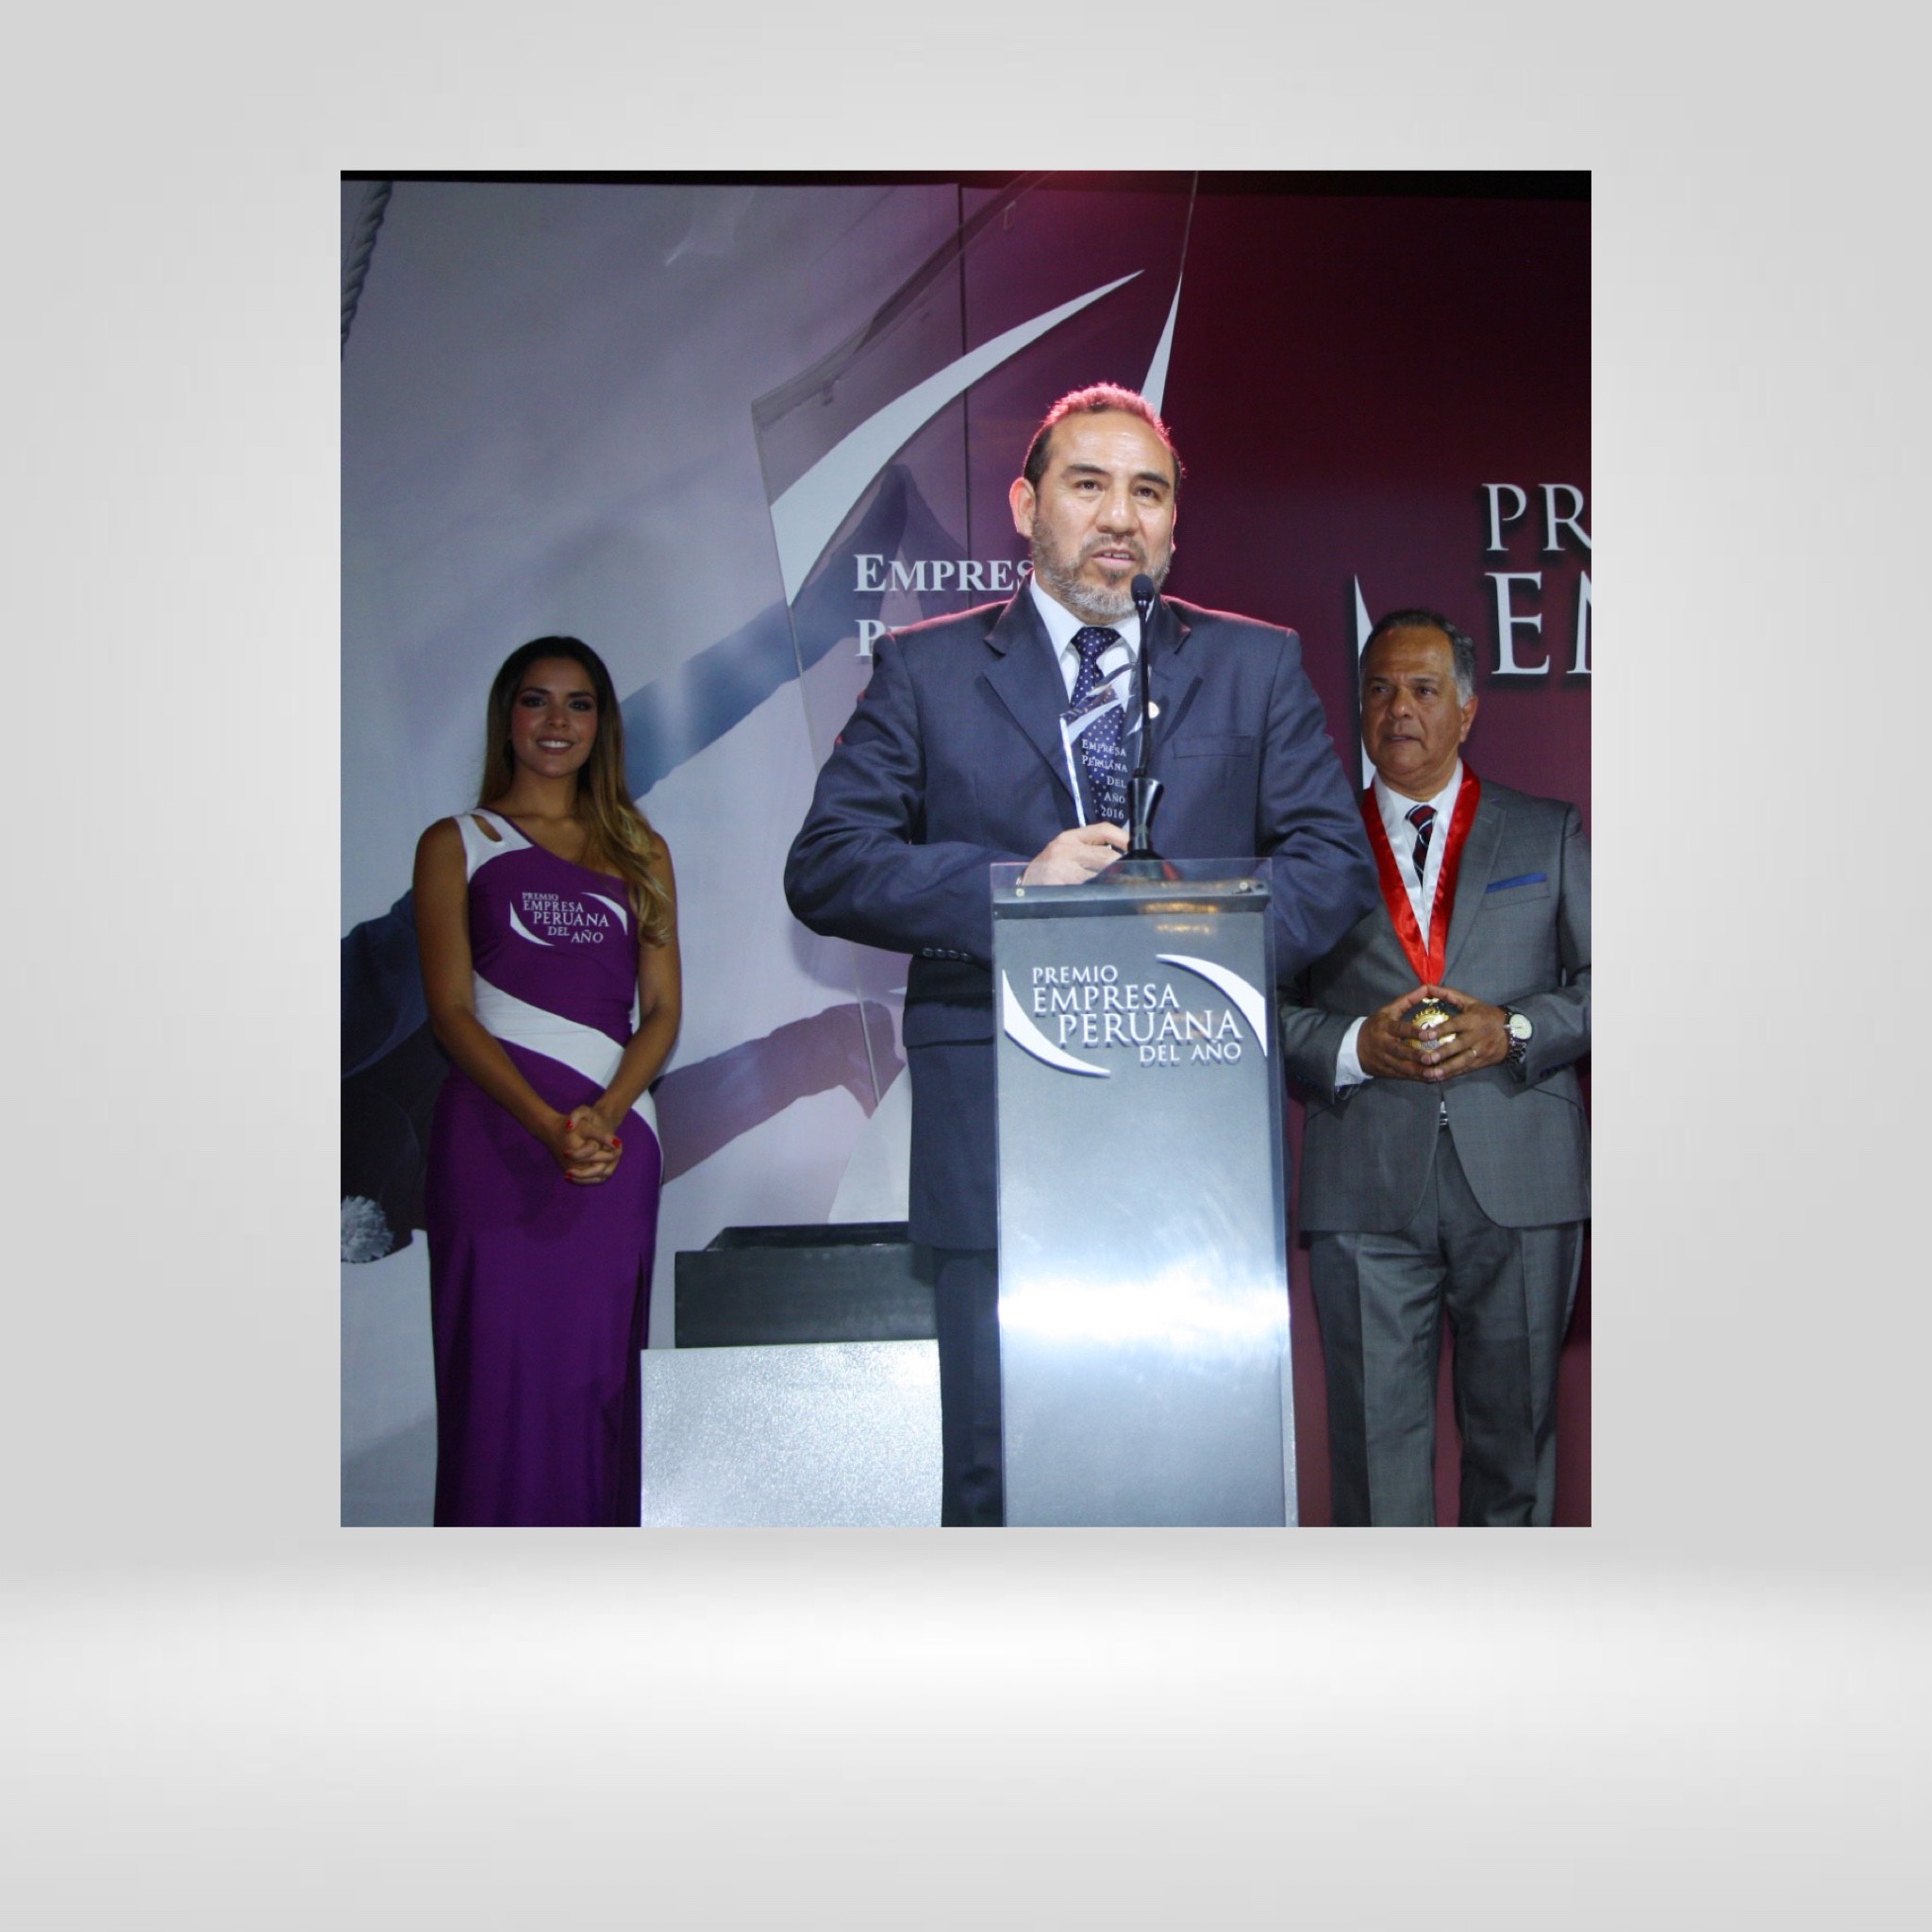 Premio Empresa Peruana del Año 2016